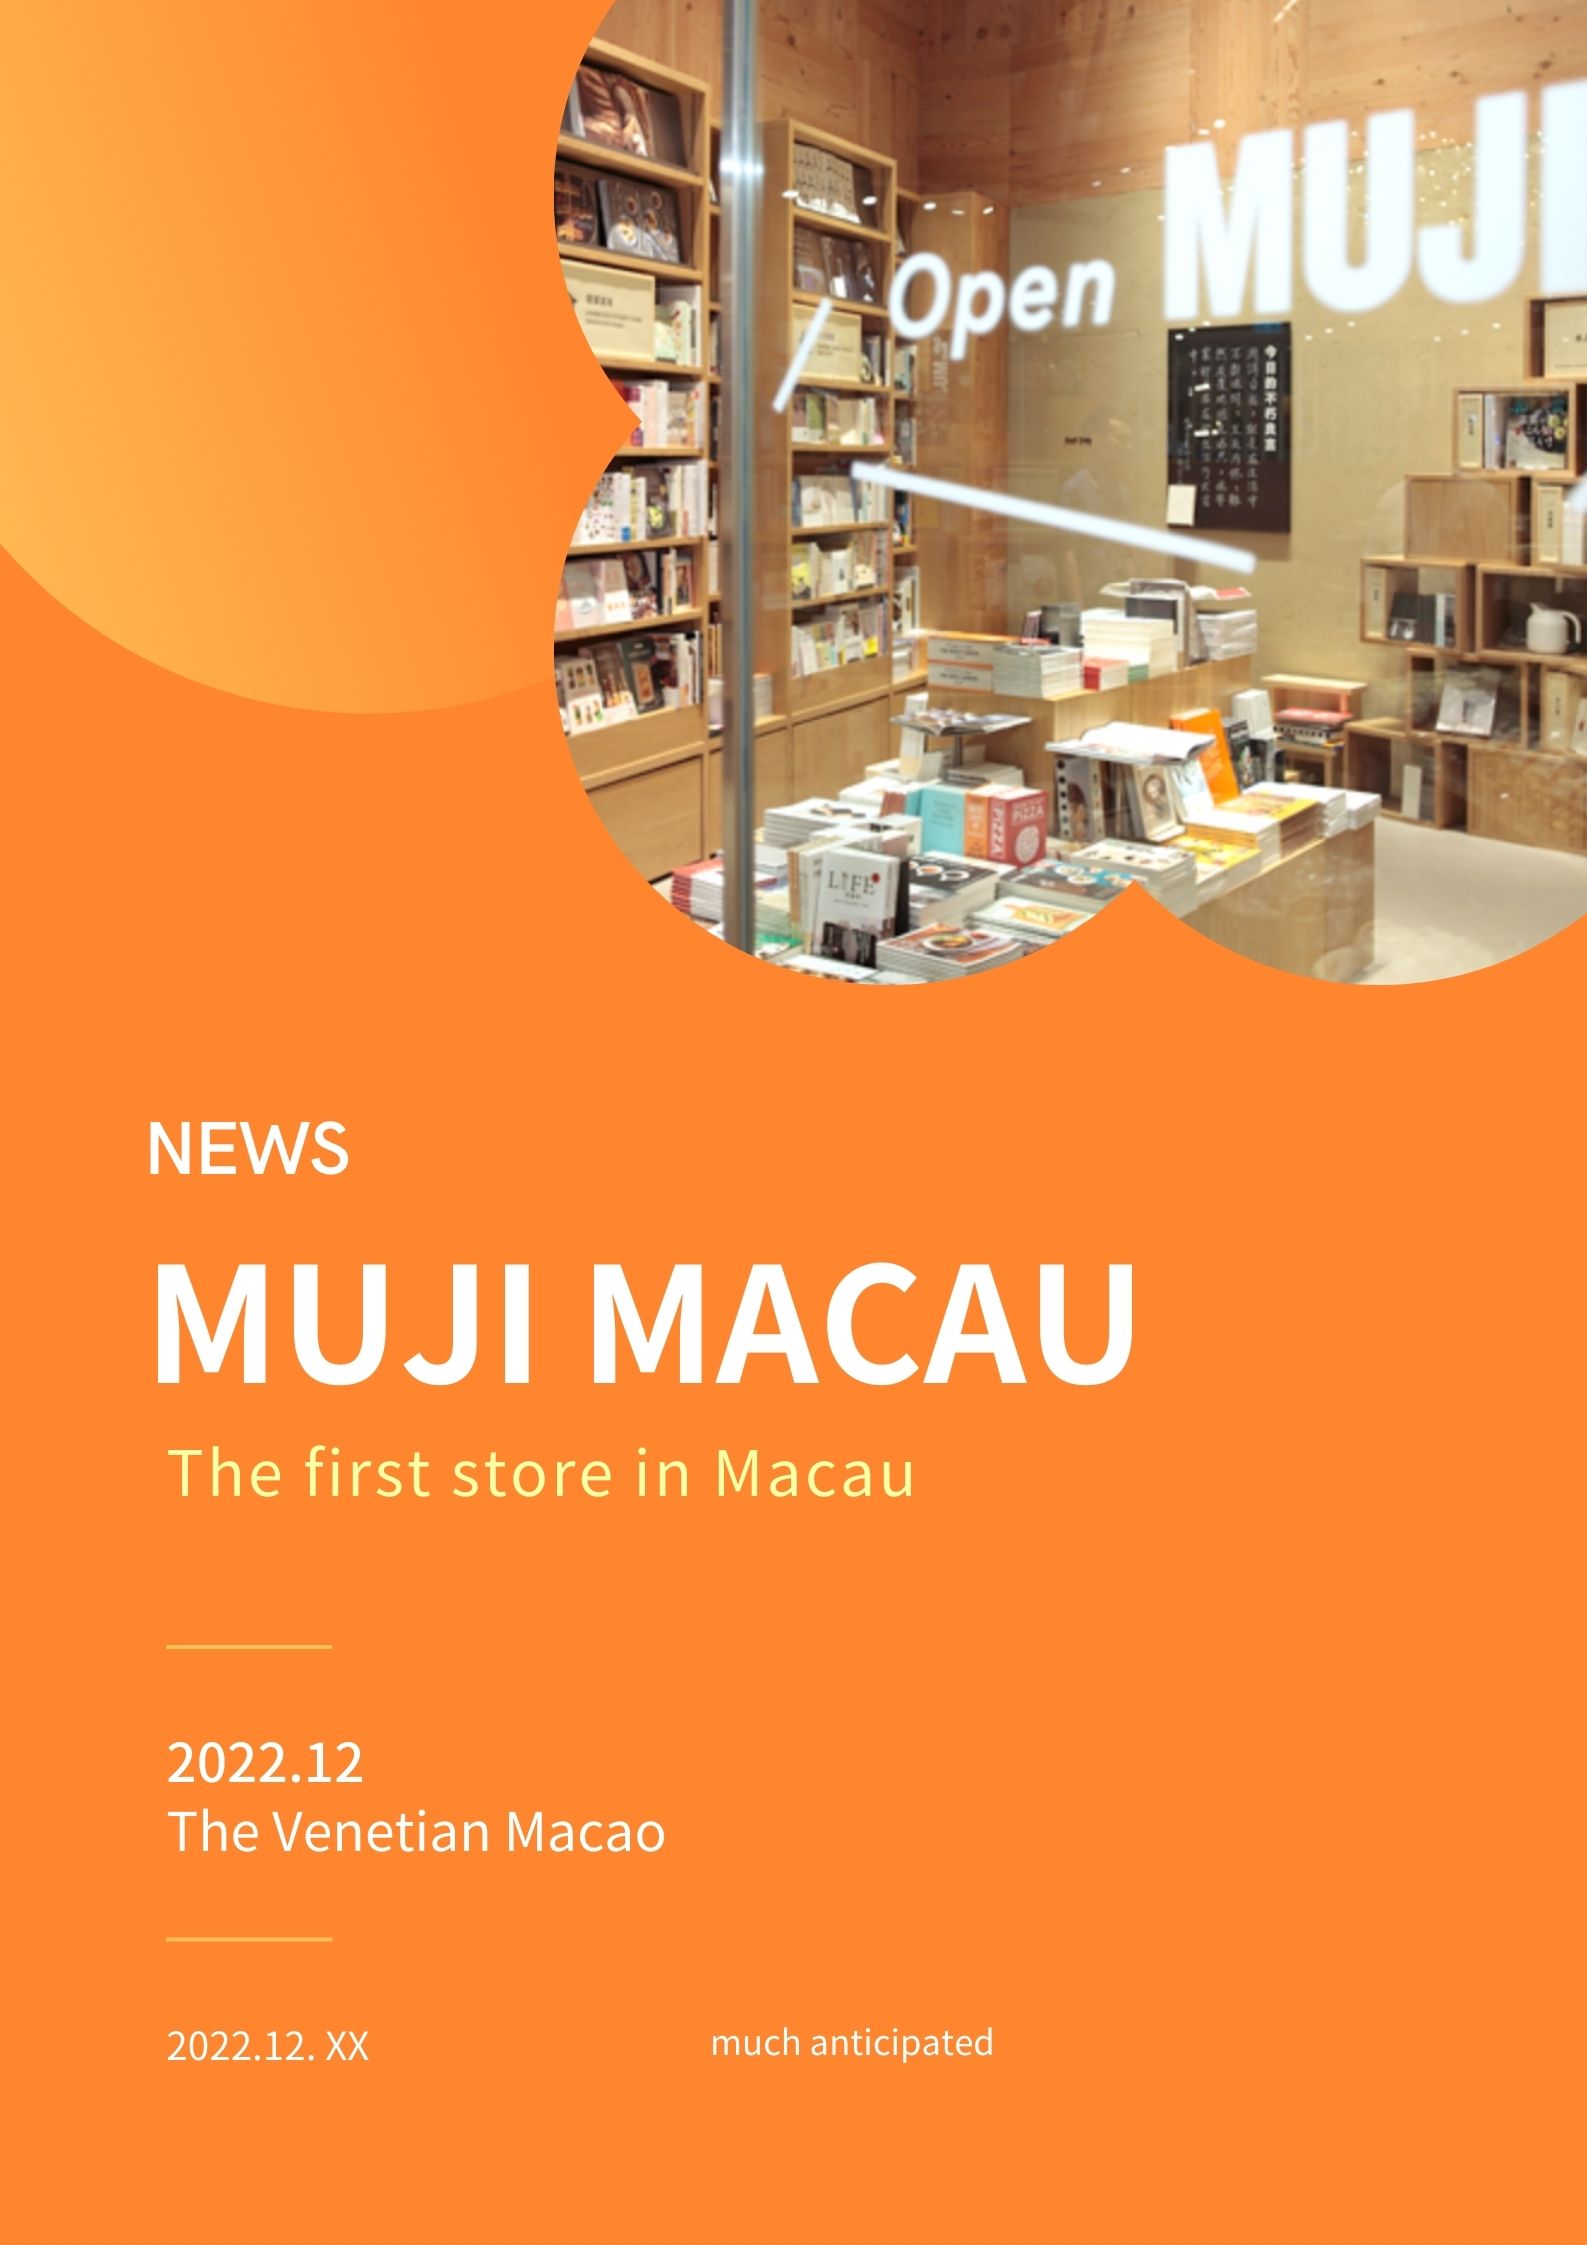 MUJI's first store in Macau